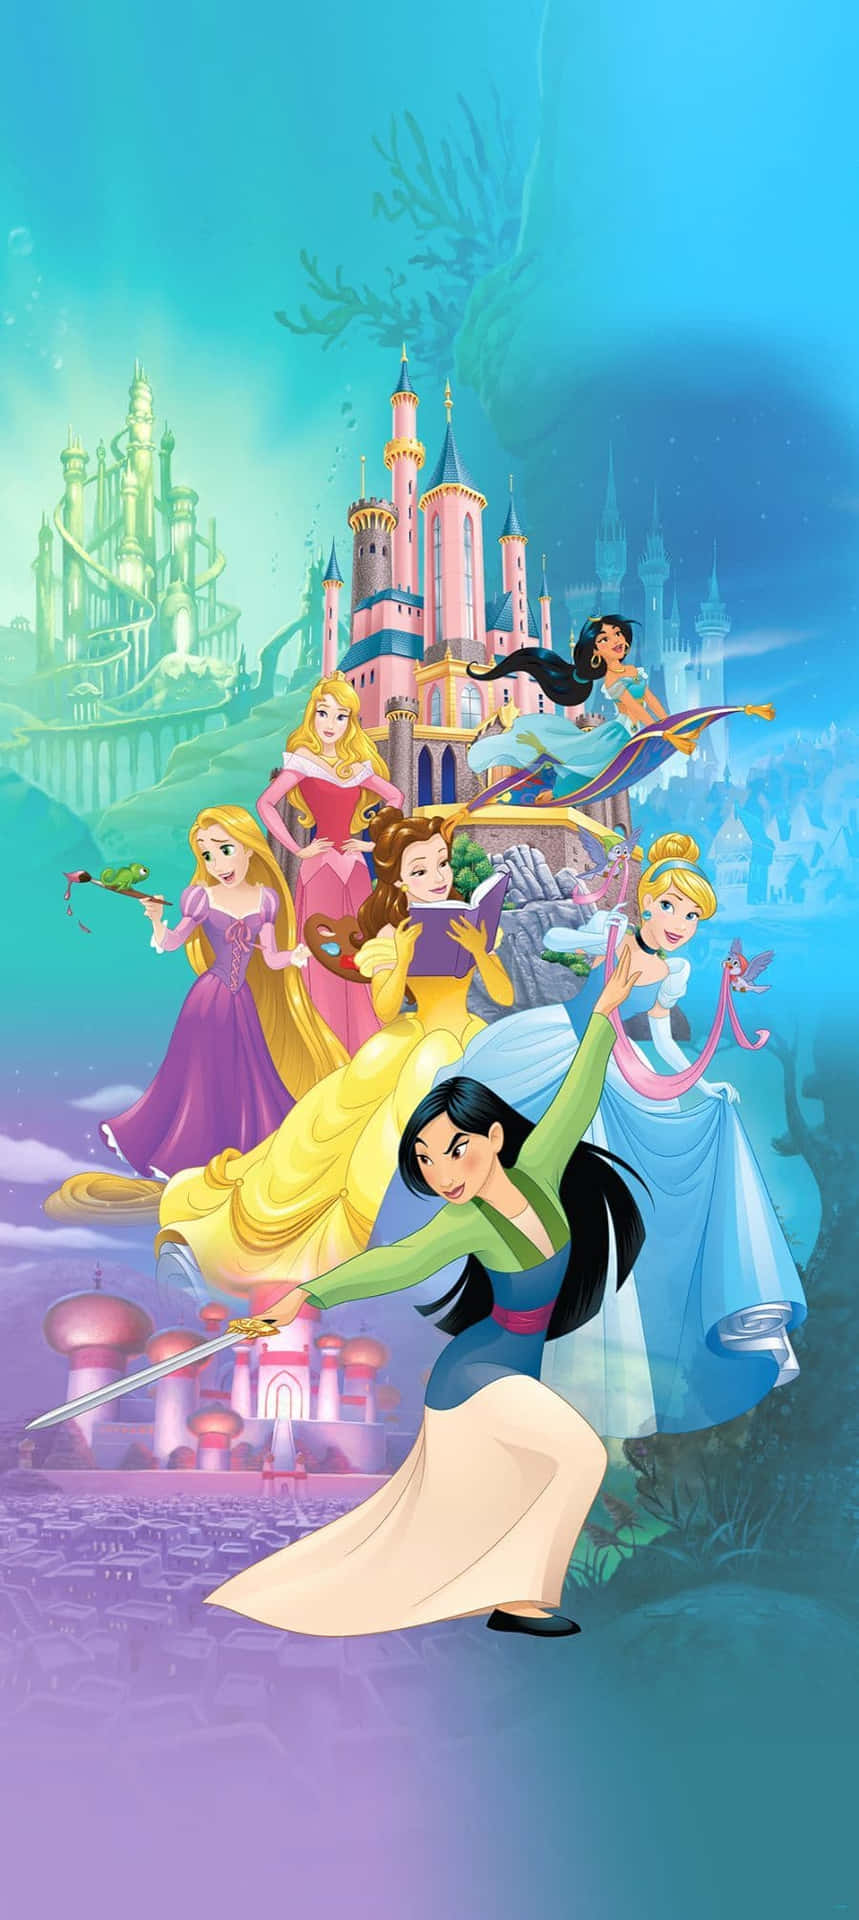 Utforskaditt Majestäts Fantastiska Världar – Disney Princess-upplevelse.